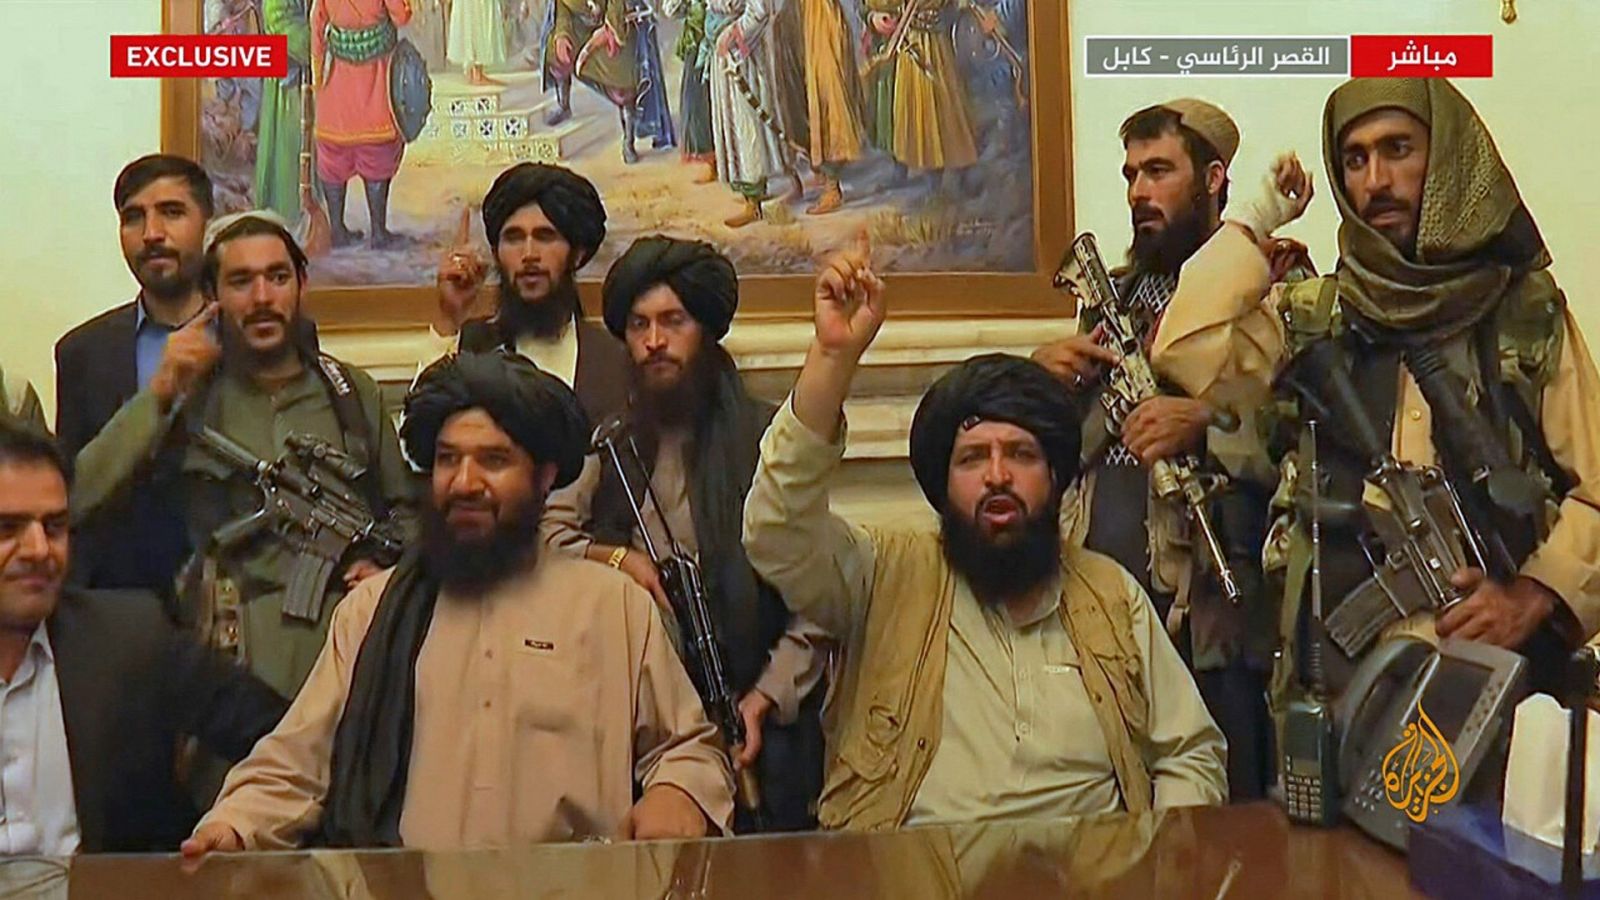 Quiénes son los líderes del movimiento talibán?